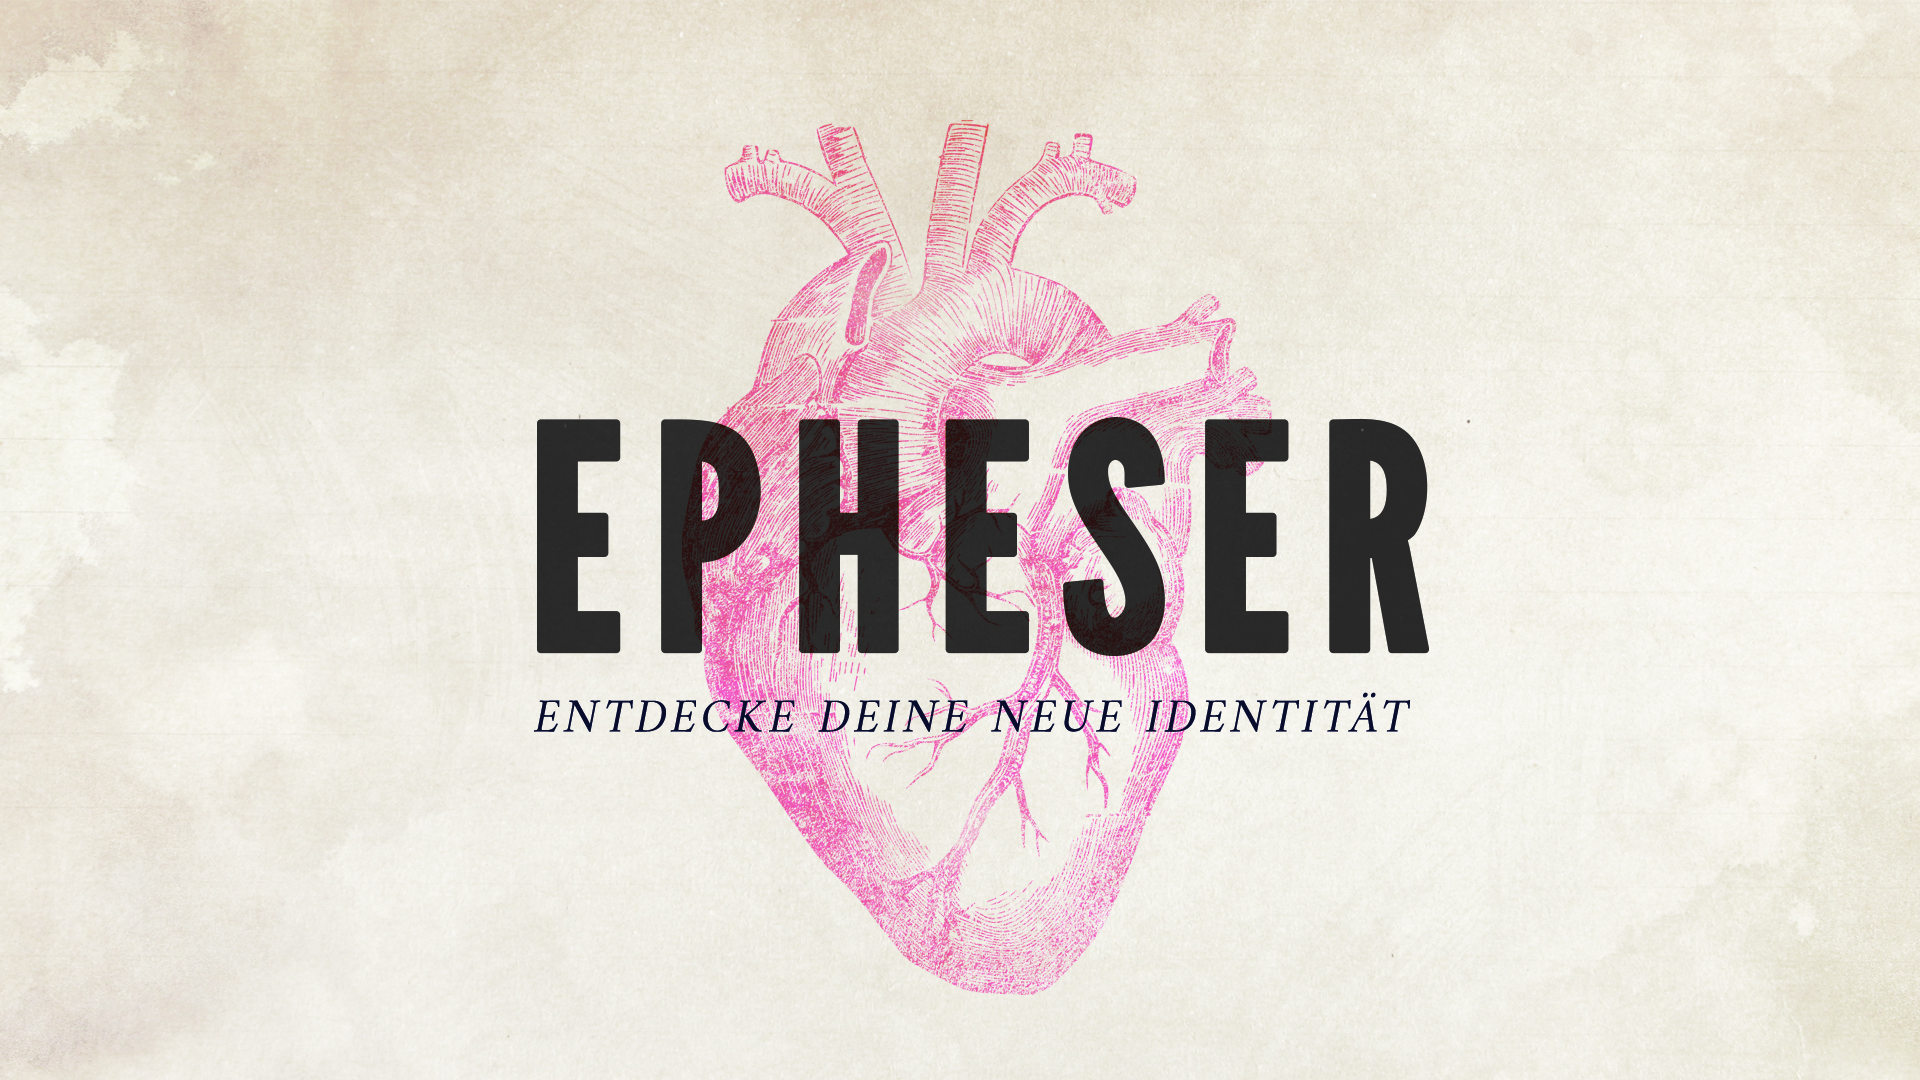 Epheser